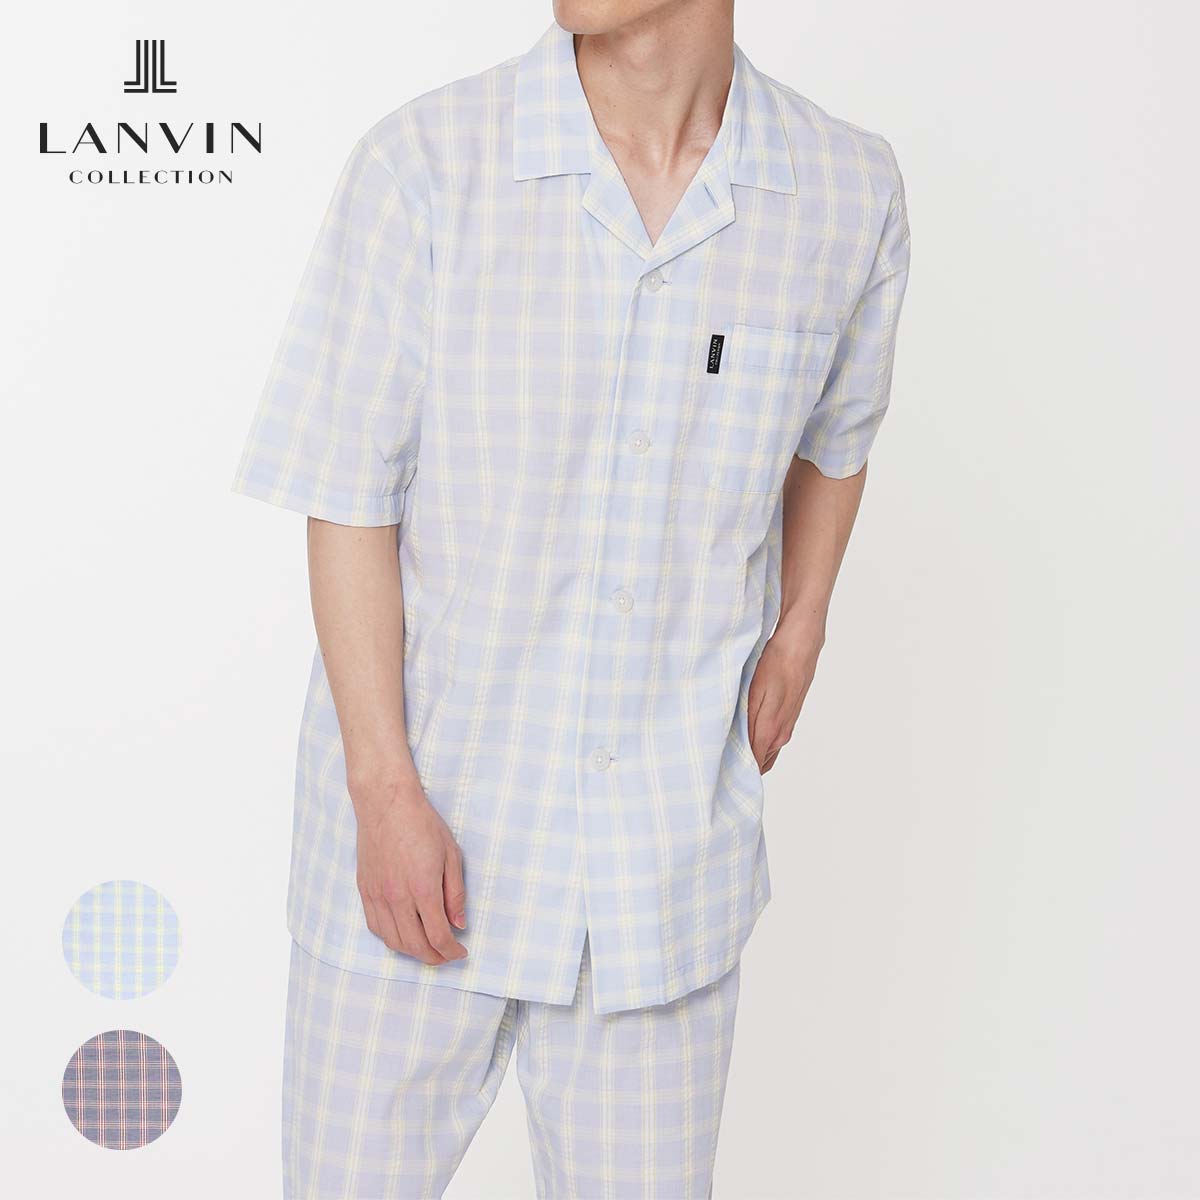 Lanvin Collection ランバン コレクション 先染め チェック 柄 綿100 半袖 シャツ 薄手 ブランド 日本製 パジャマ メンズ ラウンジウェア 部屋着 男性 紳士 プレゼント ギフト 公式ショップ 正規ライセンス商品 いラインアップ